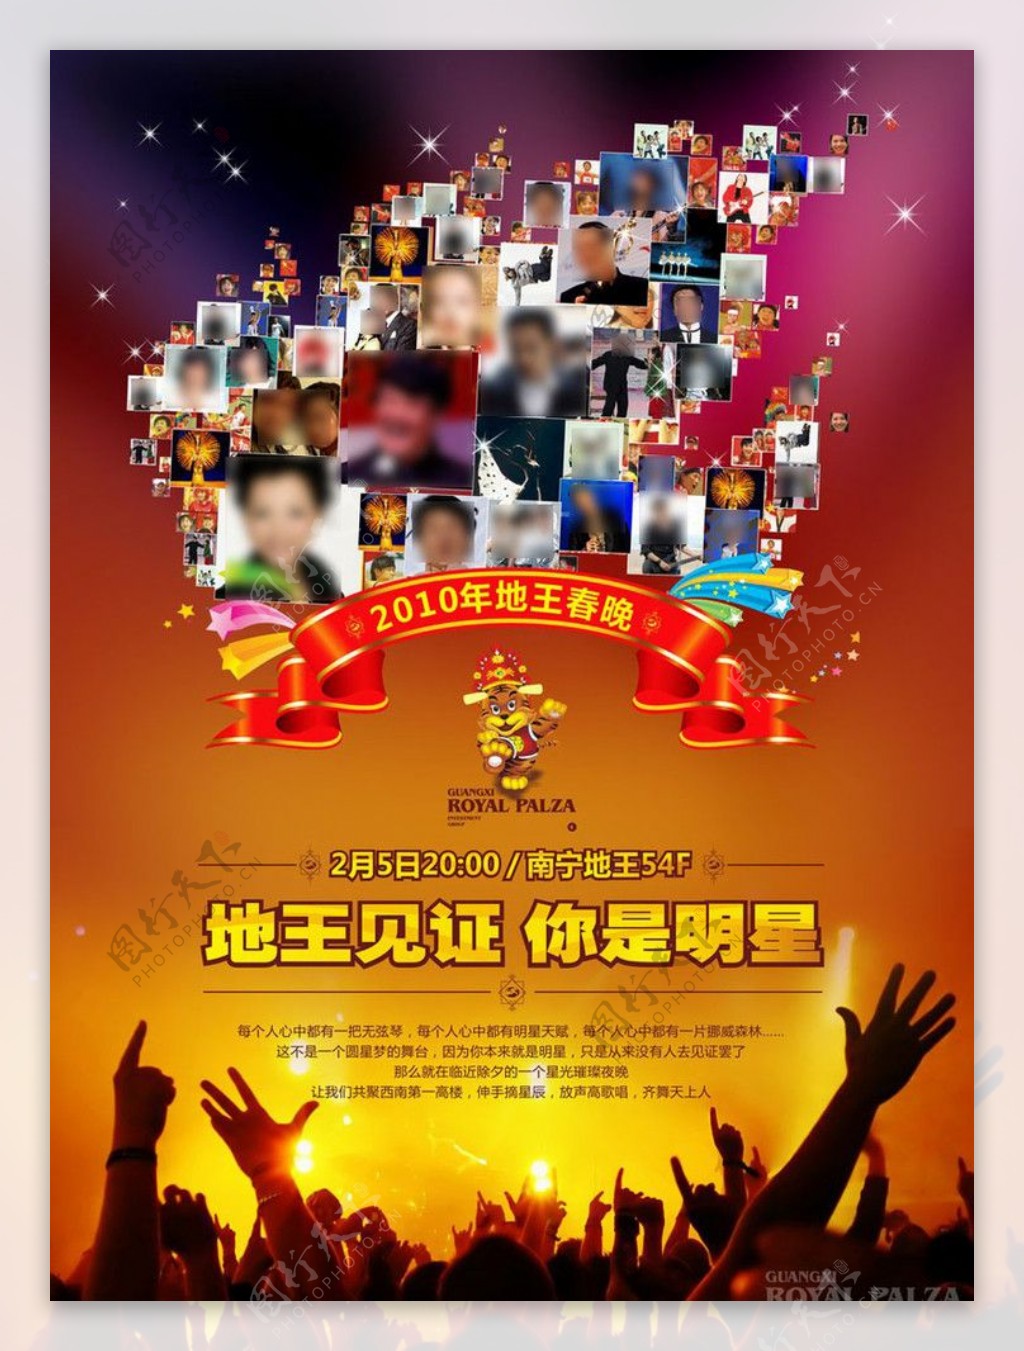 企业公司春节晚会宣传海报图片